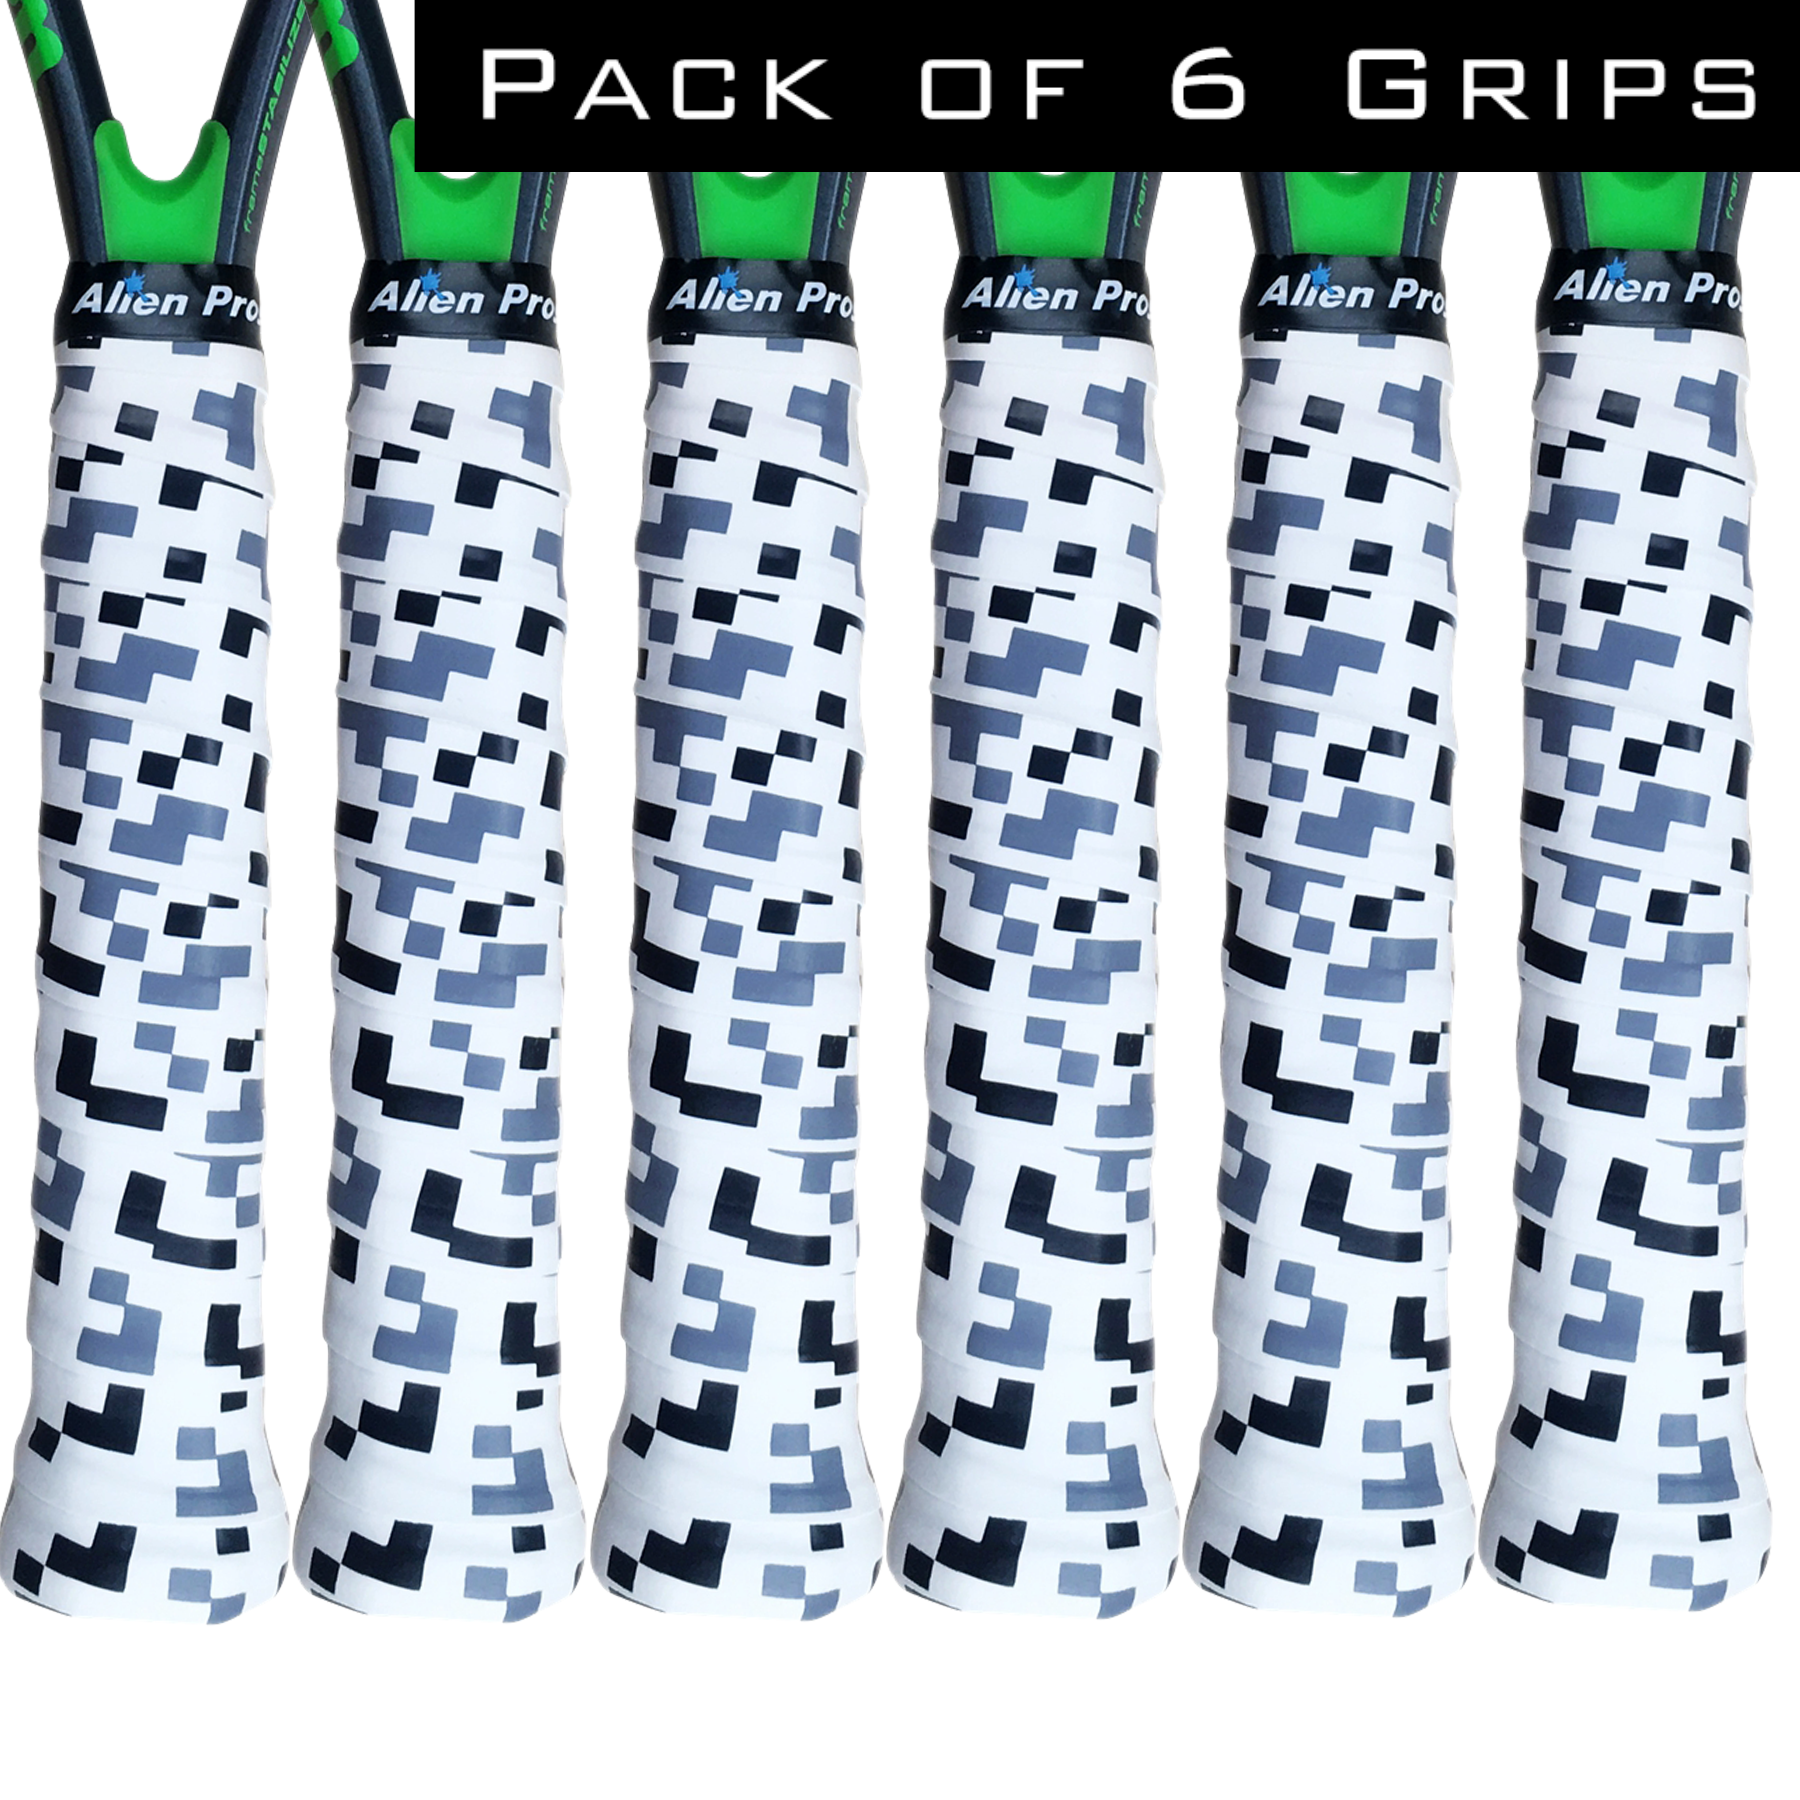 [X-Dry] Designer Racket Grip Tape for Tennis (6 Grips)